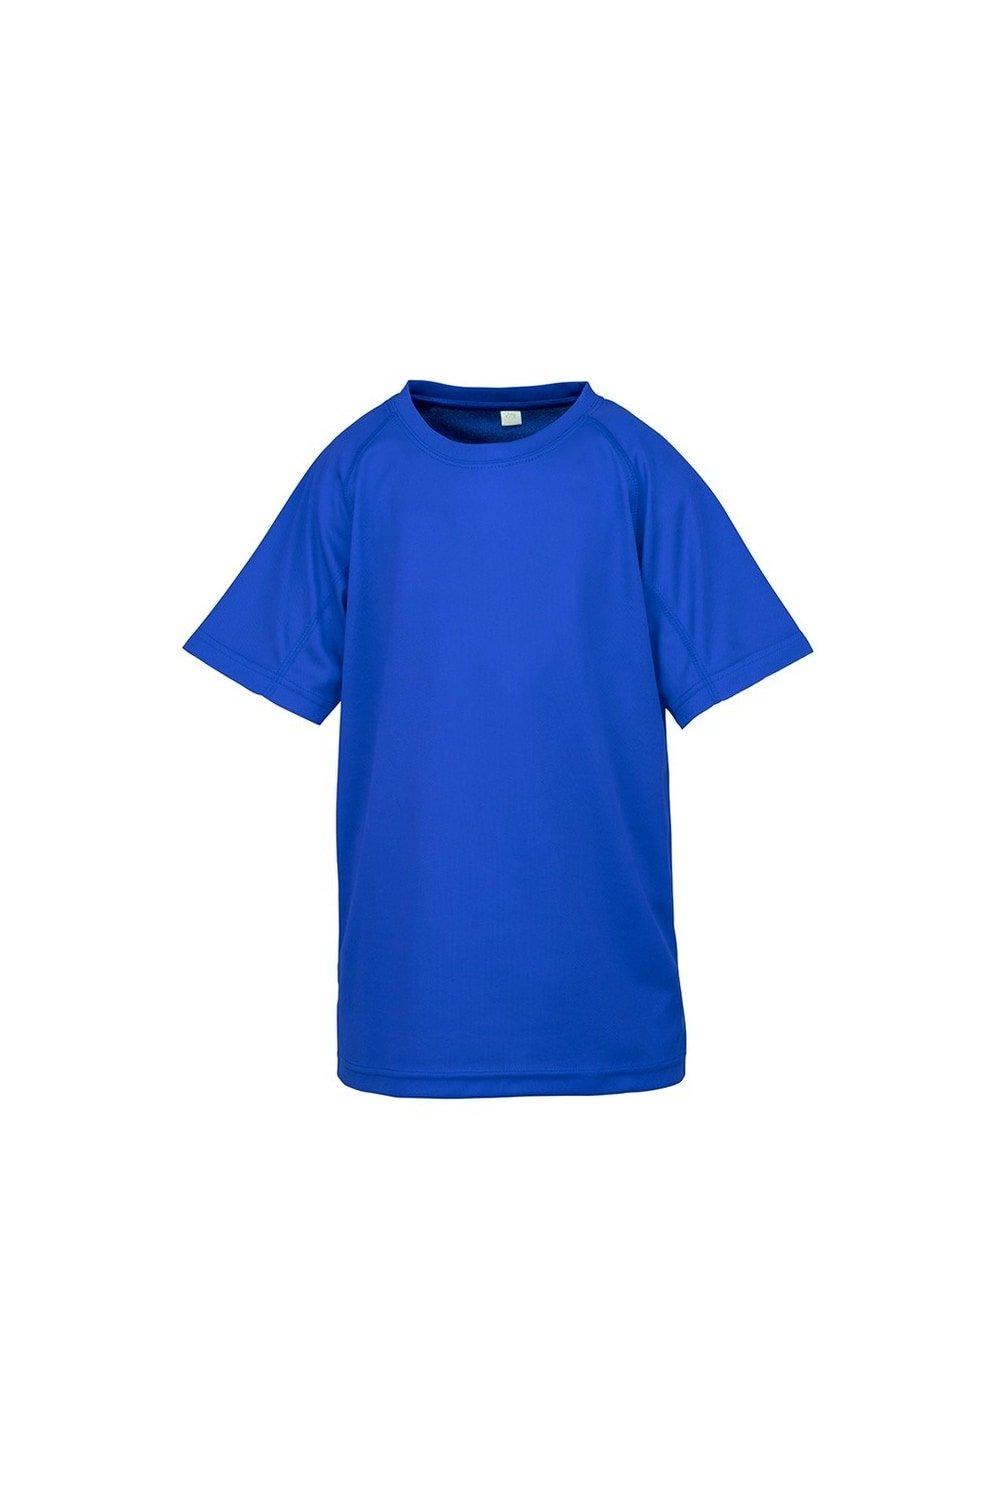 Детская футболка Impact Performance Aircool Spiro, синий женская футболка с коротким рукавом быстросохнущая дышащая облегающая футболка для гольфа